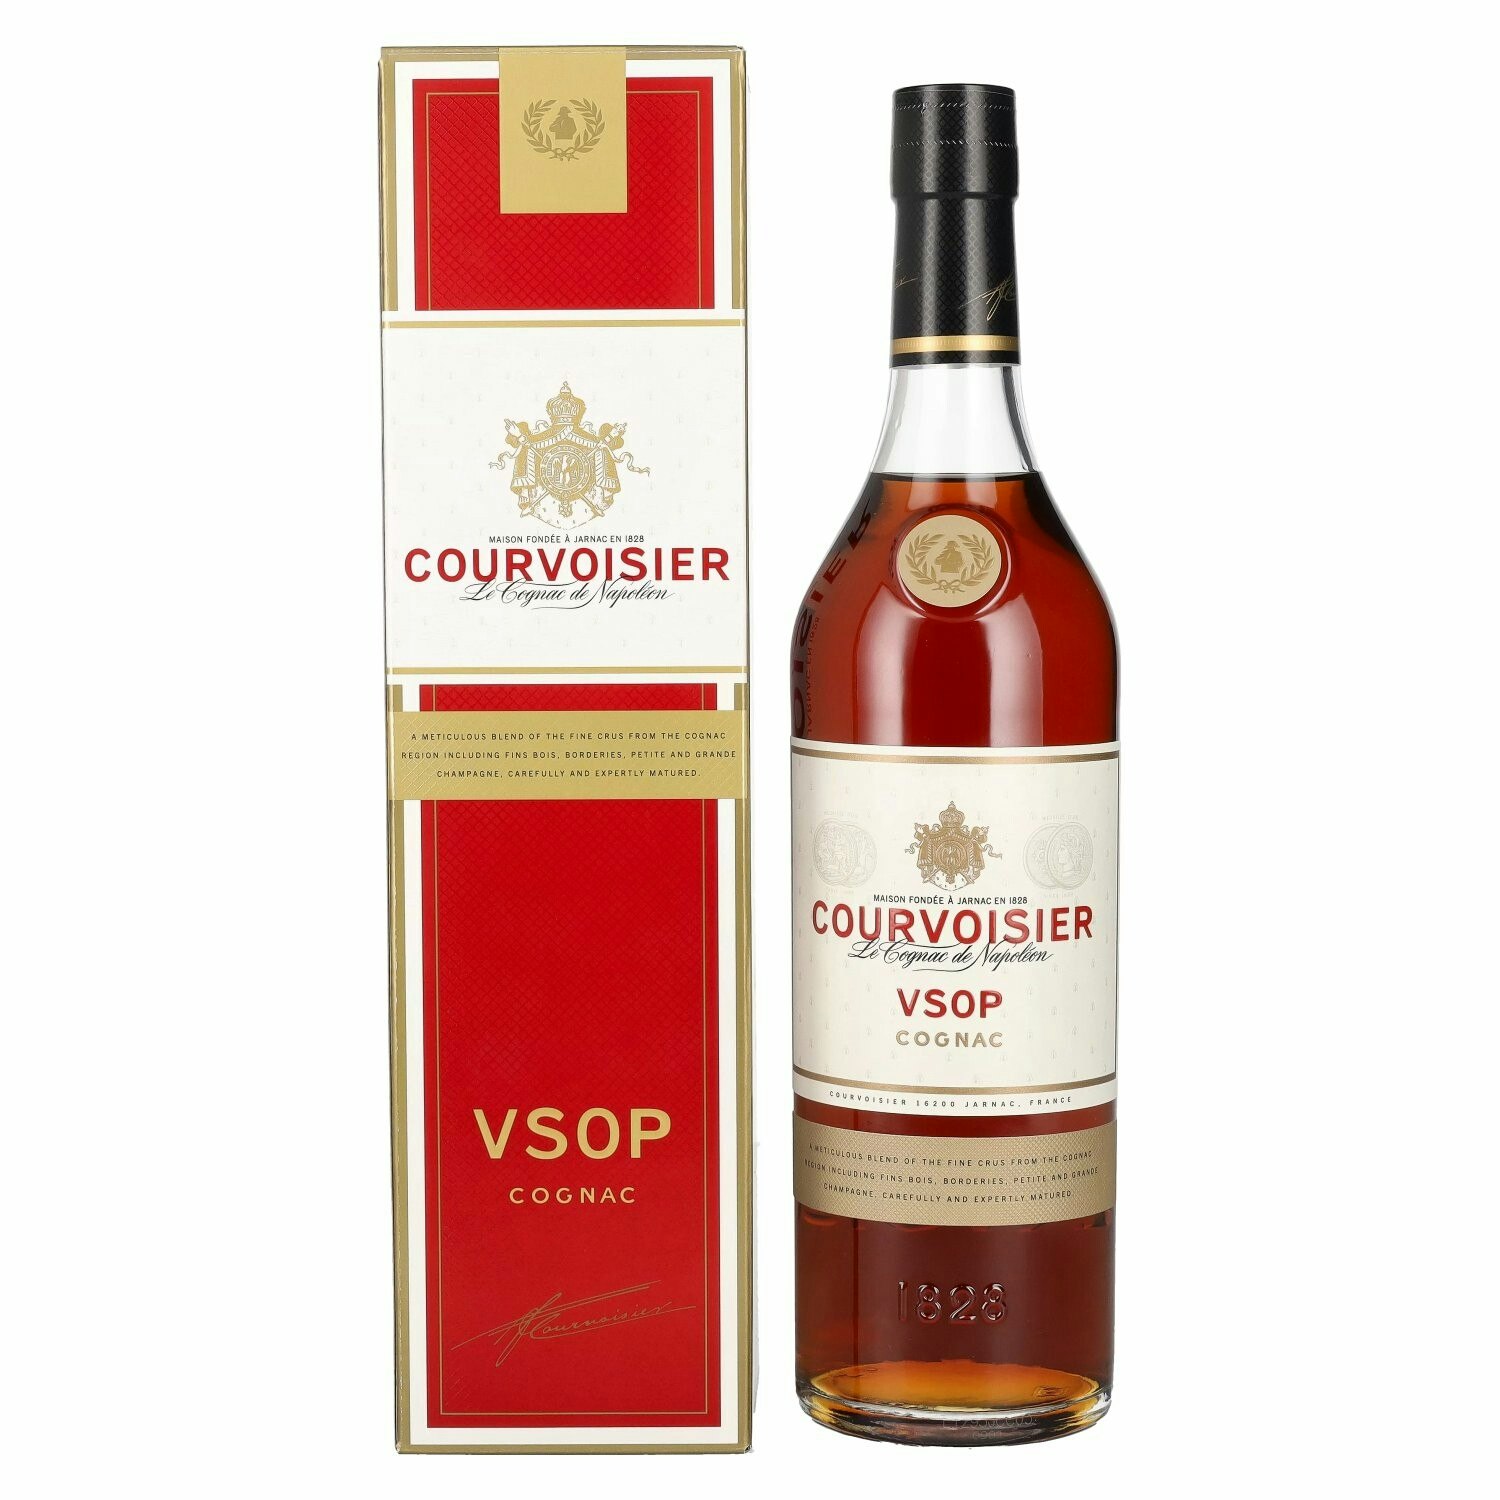 Courvoisier VSOP 40% Vol. 0,7l in Giftbox